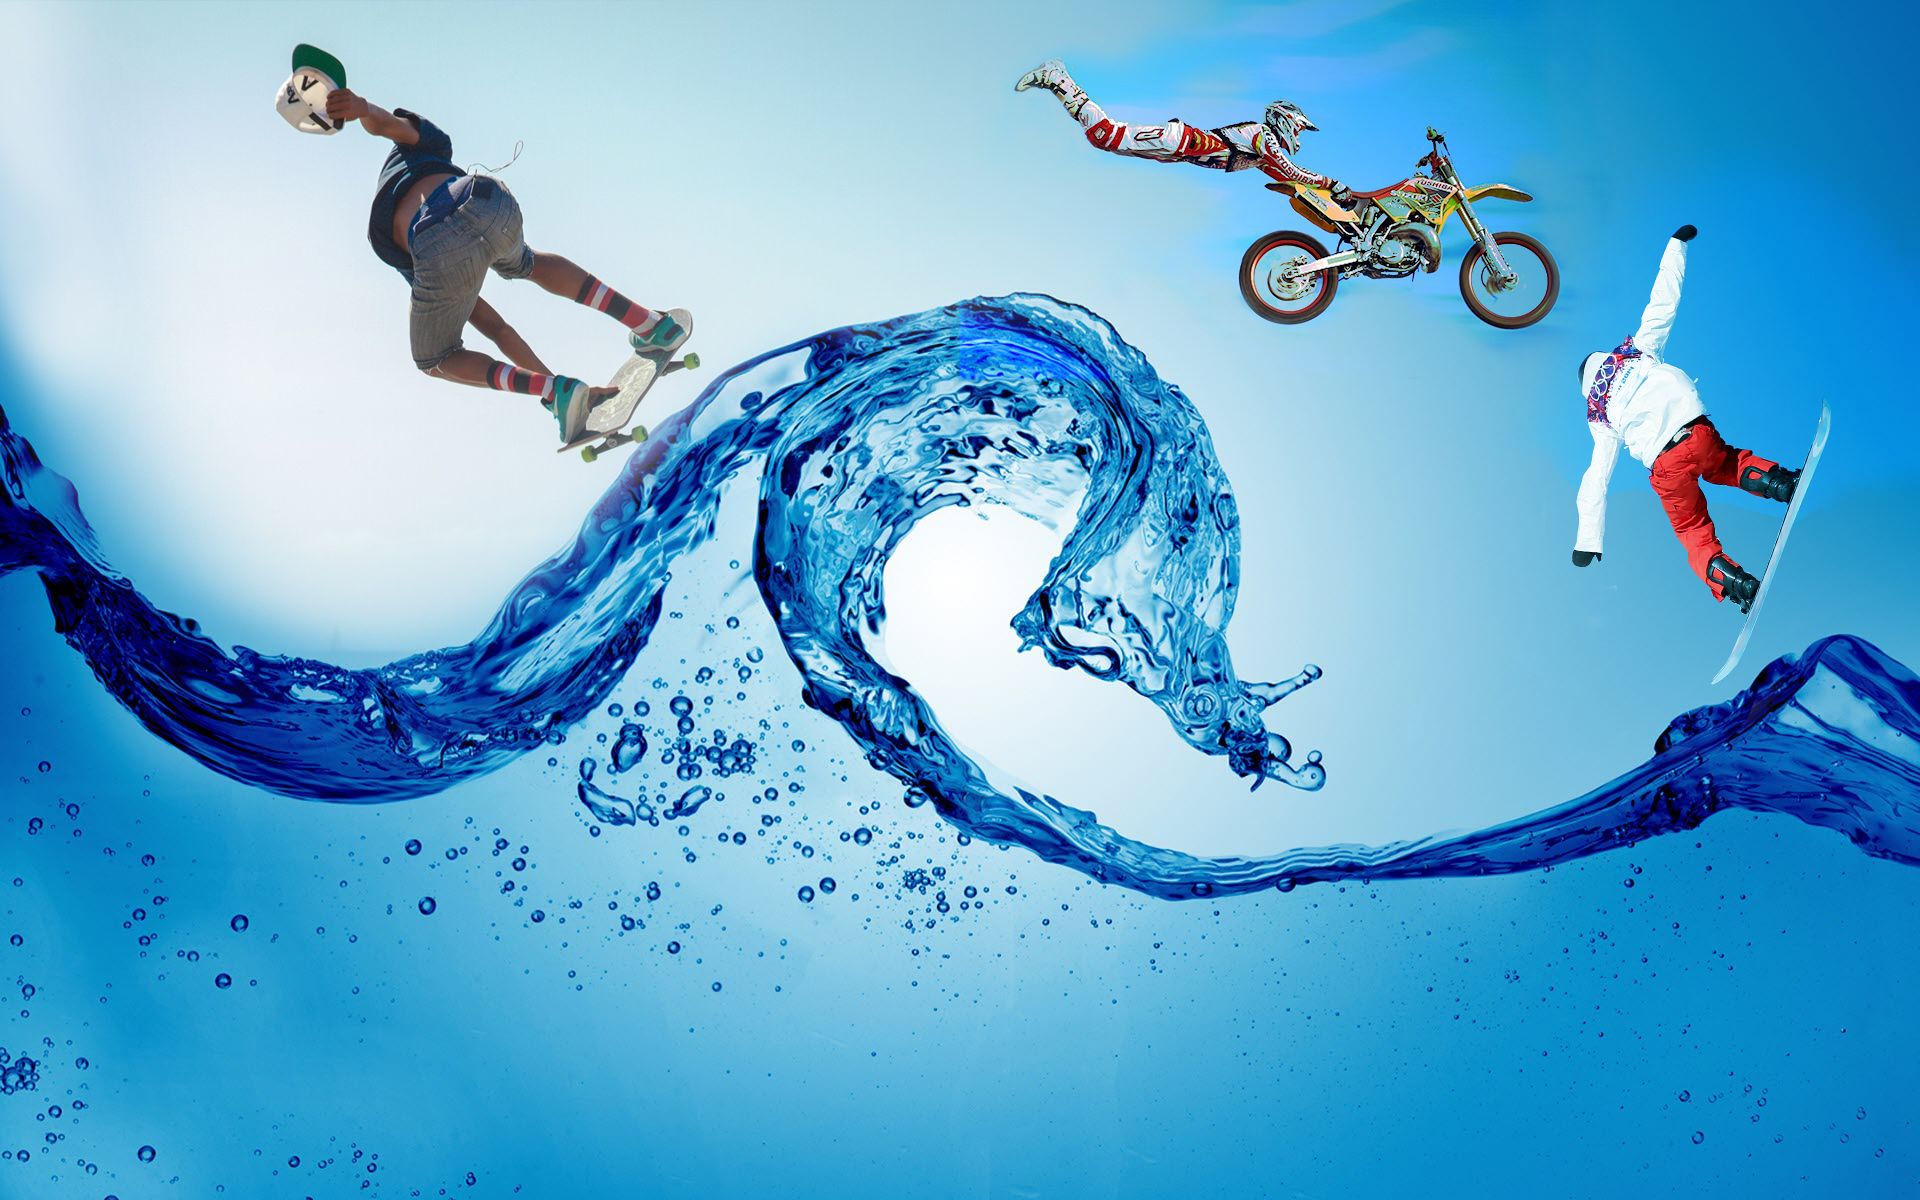 sports, artistic, motocross, skateboard, snowboard, water